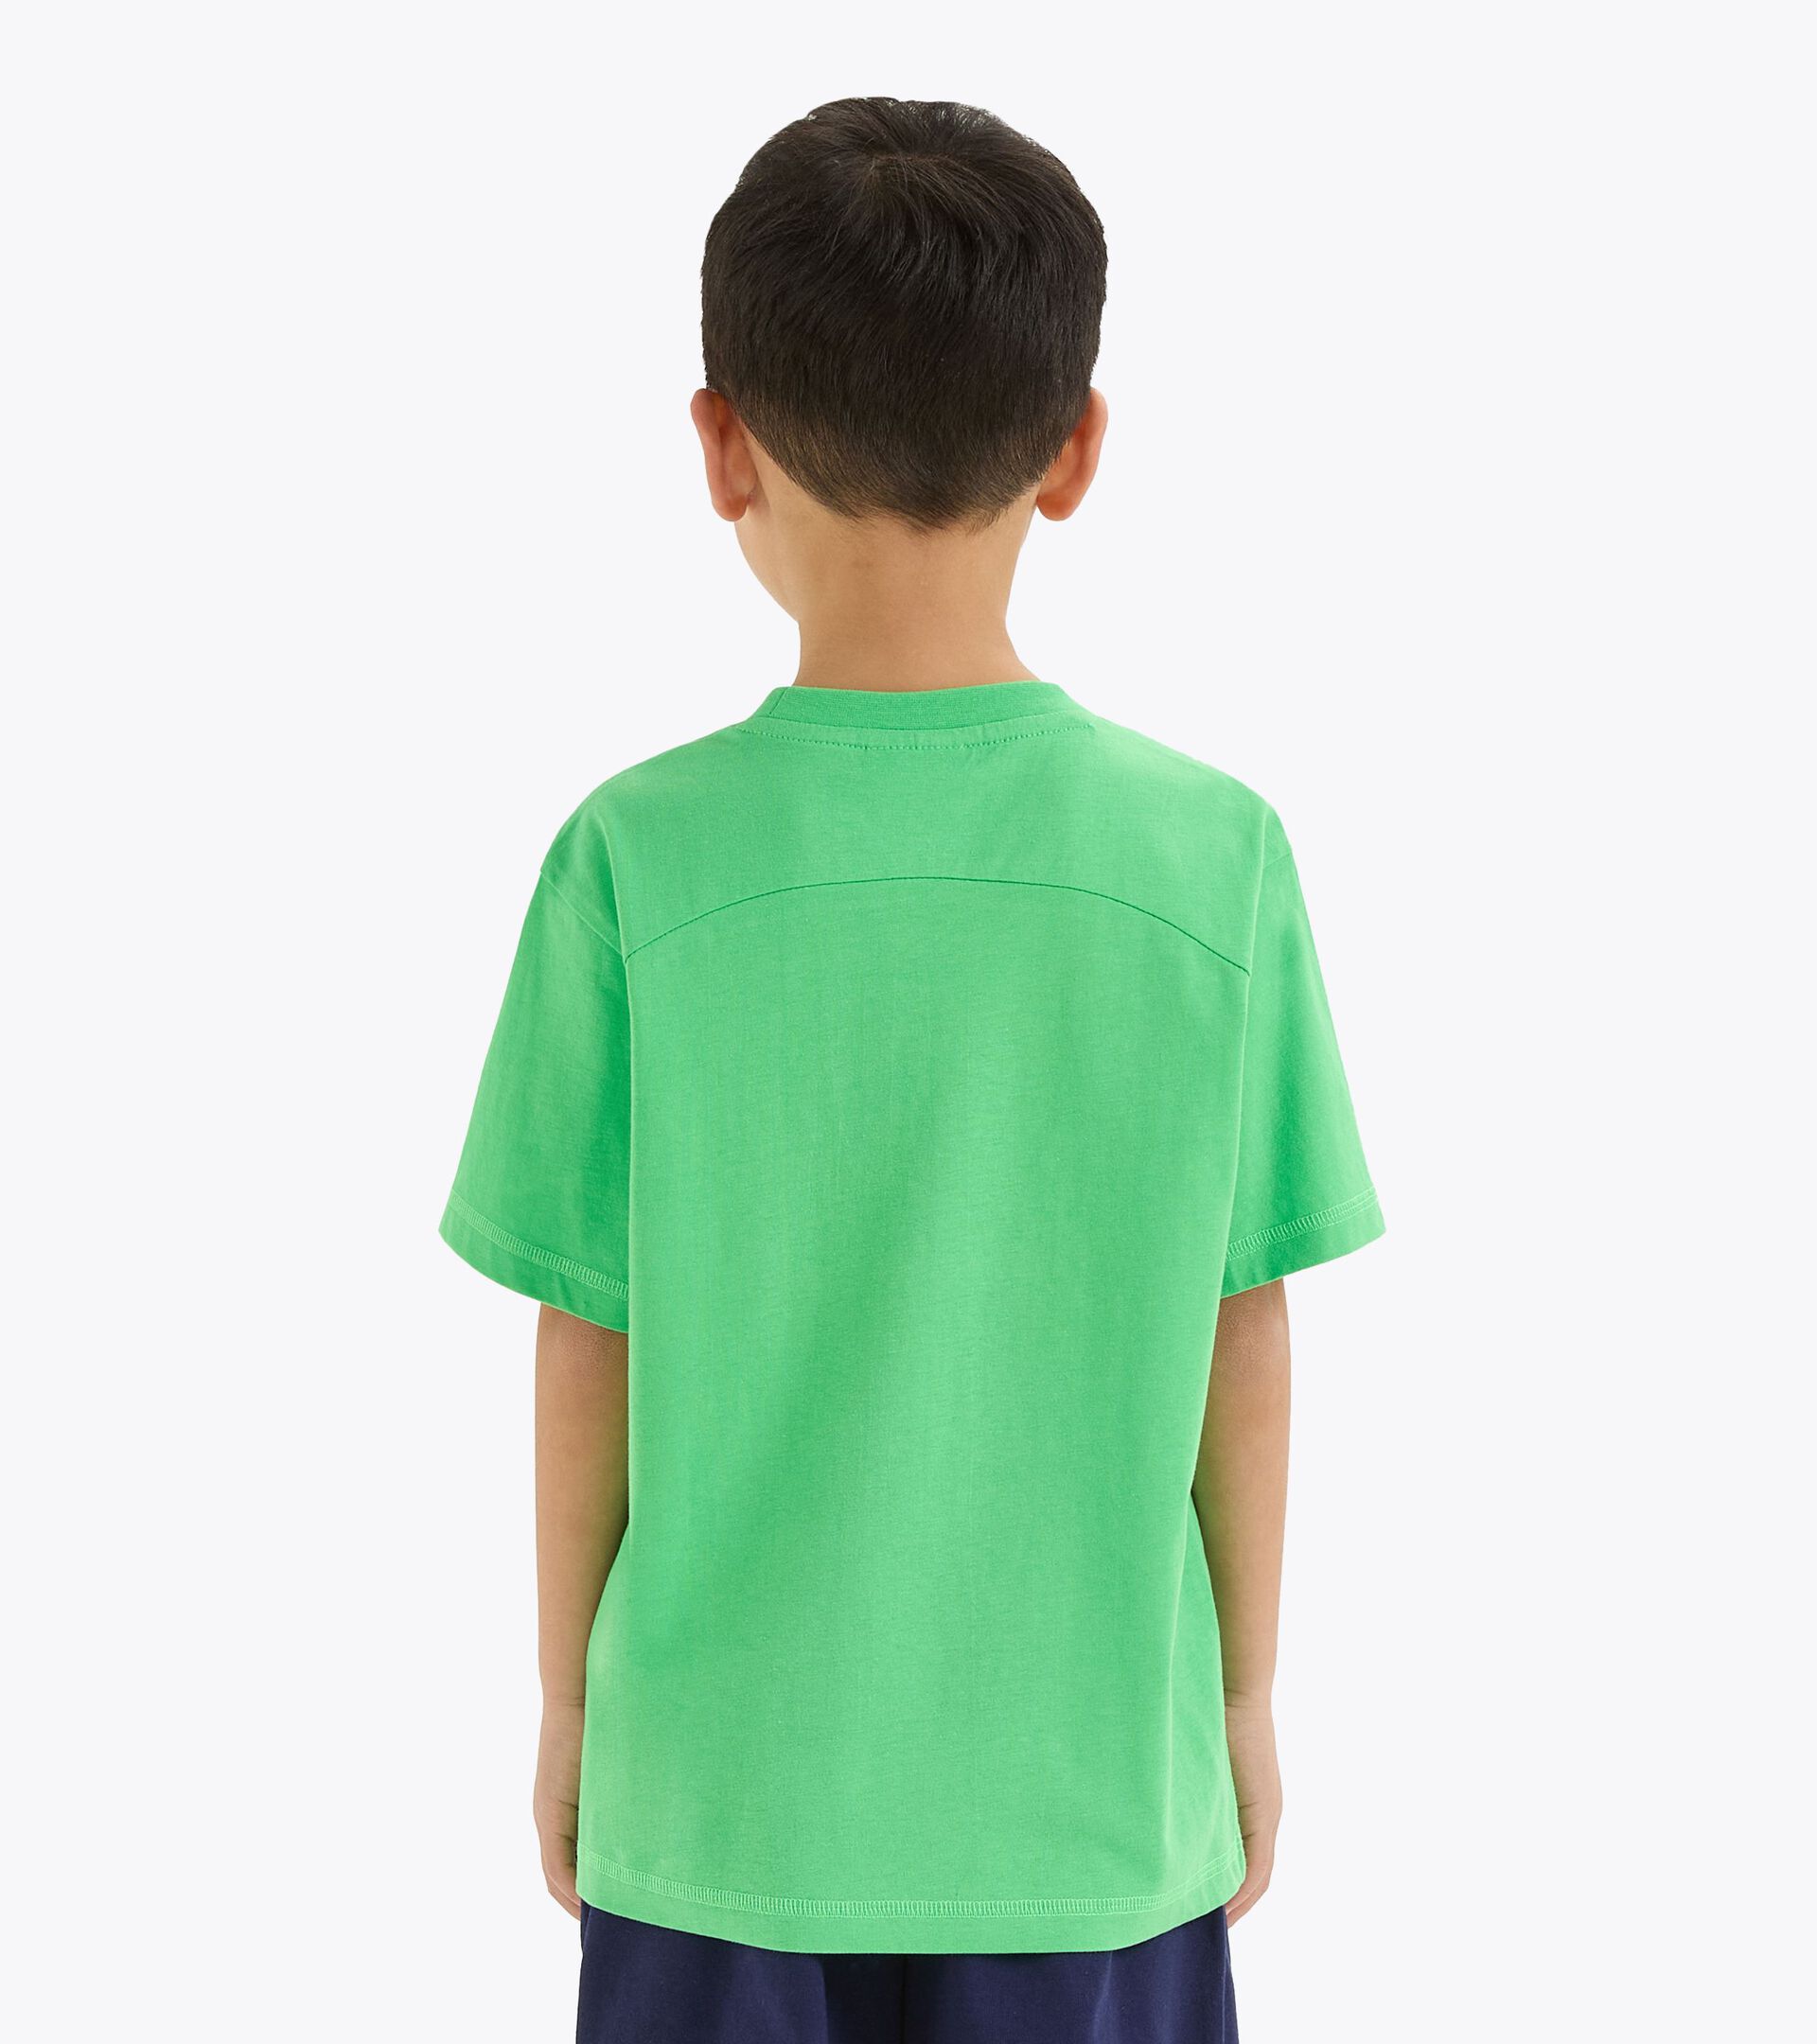 Camiseta de algodón - Niños y adolescentes
 JB.T-SHIRT SS RIDDLE VERDE VENENO - Diadora